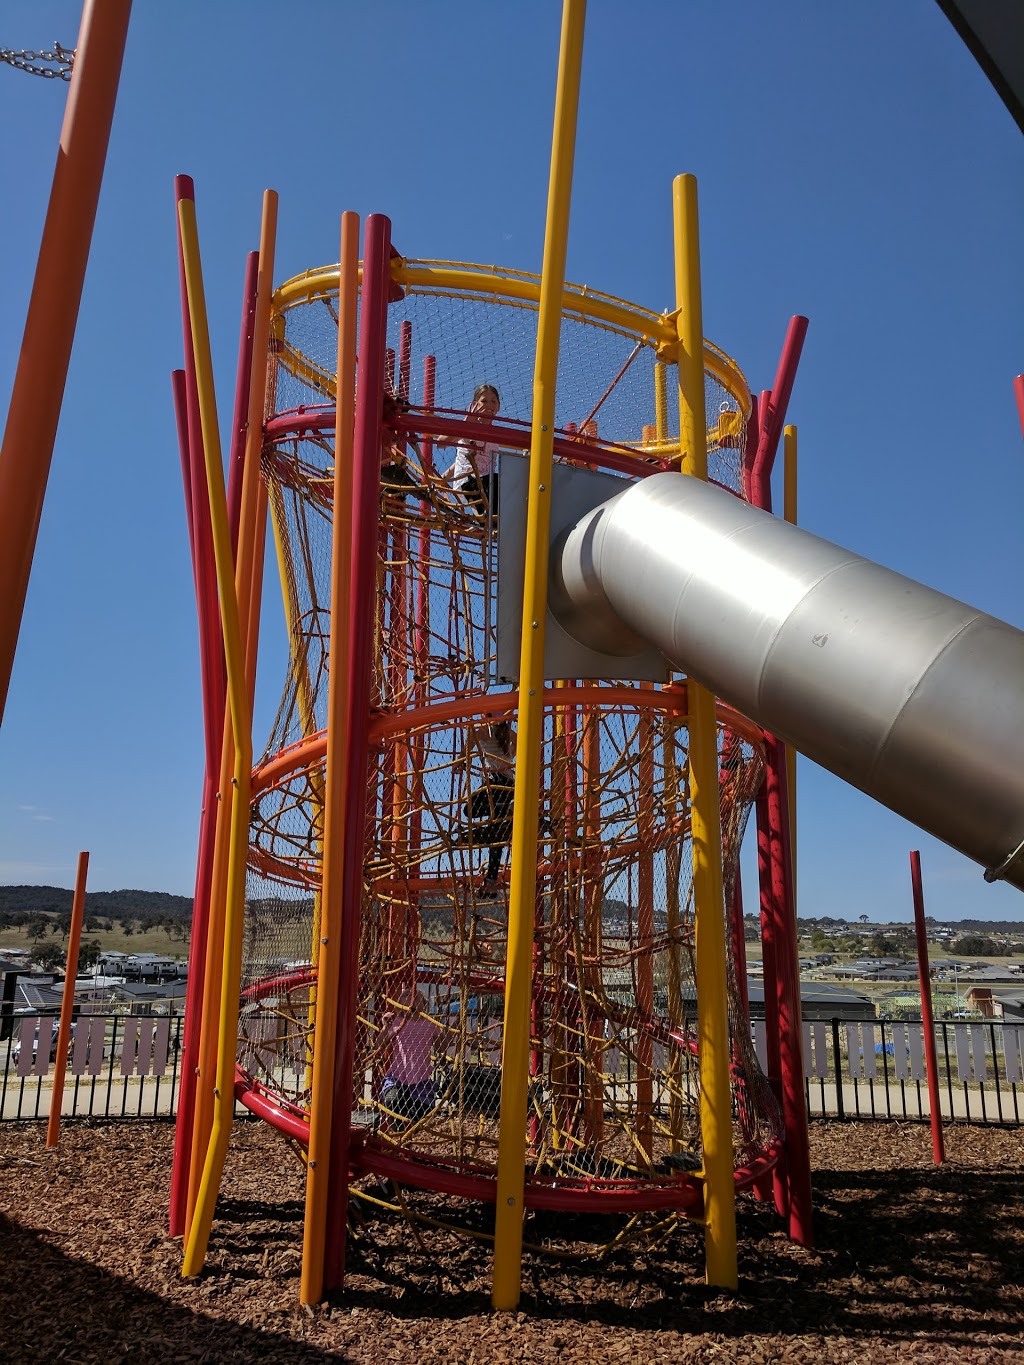 Playground | park | Moncrieff ACT 2914, Australia